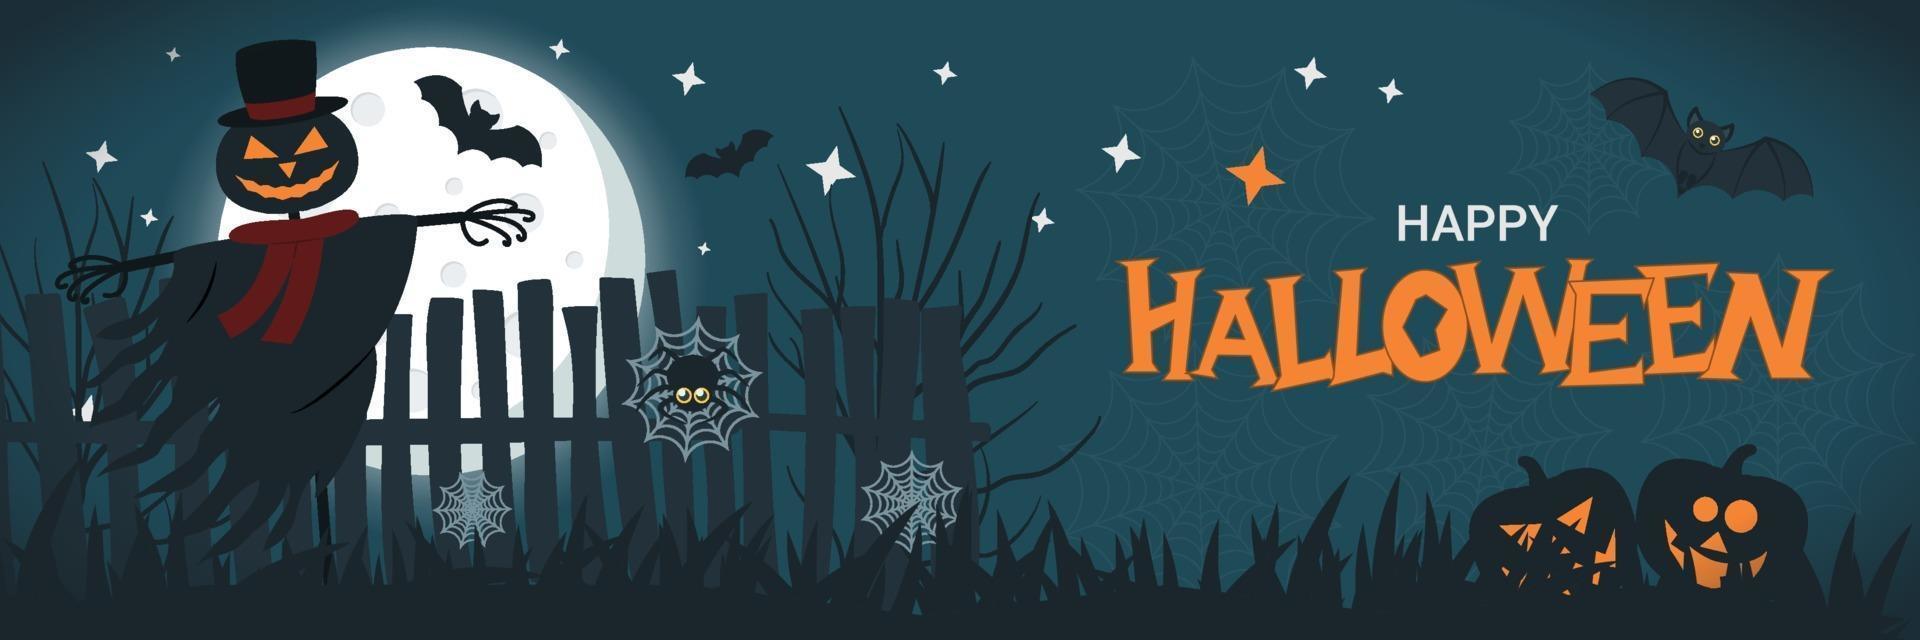 Halloween-Banner mit Jack-Laternen-Vogelscheuche vektor